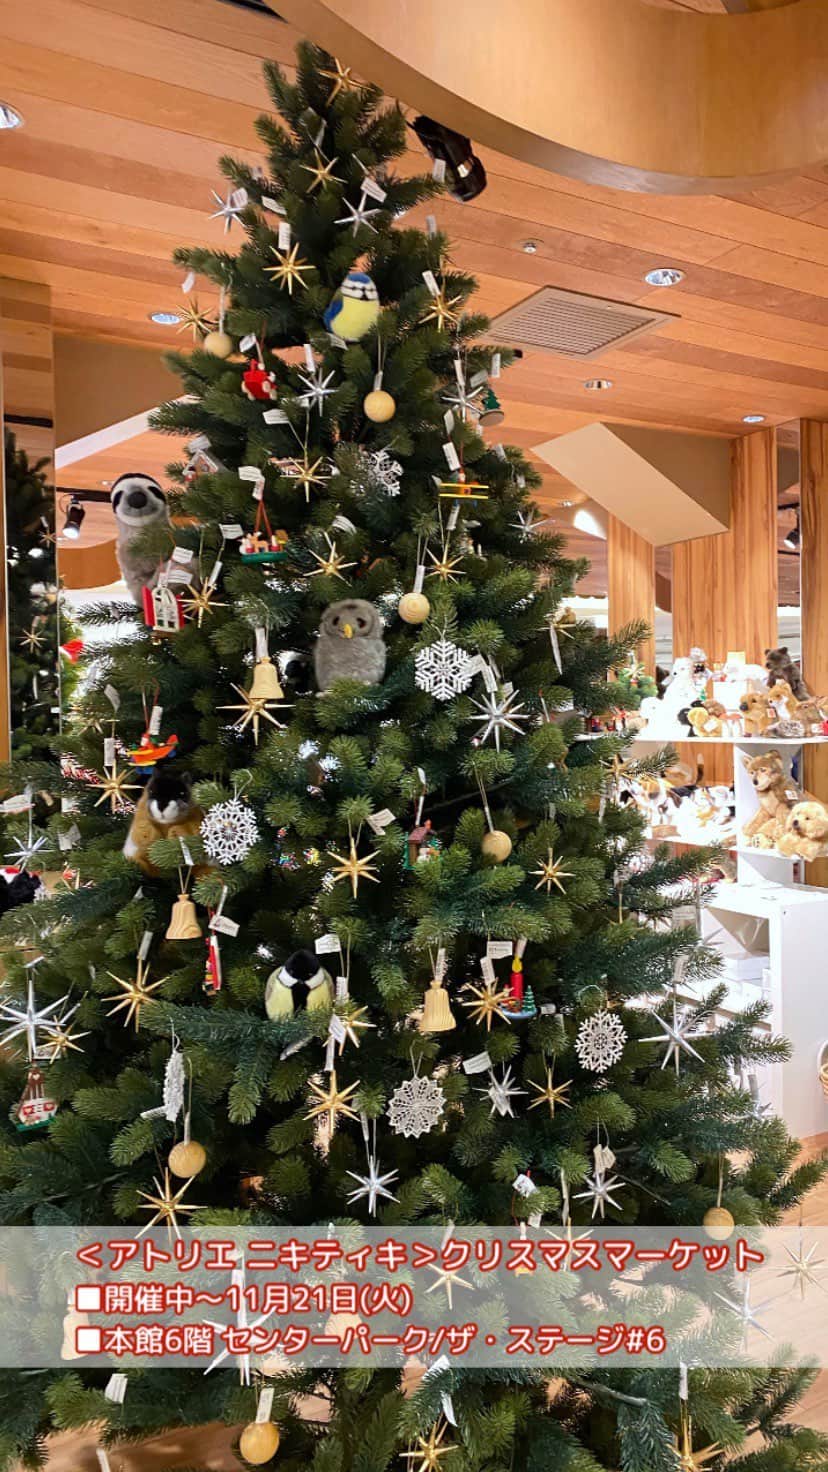 ISETAN PARK netのインスタグラム：「おとなもお子さまも楽しめる❤️  ＜アトリエ ニキティキ＞のクリスマスアイテム🎄    毎年人気！＜グローバルトレード社＞のシュバルツヴァルトツリーをはじめ、アドベントカレンダーやくるみ割り人形、ヨーロッパの木製玩具、知育玩具、ぬいぐるみなど、クリスマスプレゼントに、またクリスマスへのカウントダウンを楽しめるアイテムを取り揃えました。    ＜アトリエ ニキティキ＞クリスマスマーケット  ■開催中～11月21日(火)  ■本館6階 センターパーク/ザ・ステージ＃6  ※数量に限りがある商品もございますので、品切れの際はご容赦ください。  ※本館6階 玩具では12月25日(月)までお取り扱いしております。    三越伊勢丹のクリスマス情報は @isetan_shinjuku ストーリー「🎄クリスマス」またはこちら▼  https://www.mistore.jp/store/shinjuku/shops/baby_kids/toys/shopnews_list/shopnews_021121112211.html    商品のお問い合わせ▼  三越伊勢丹オンラインストア  https://www.mistore.jp/shopping/feature/baby_kids_f1/toy39_bk.html  三越伊勢丹リモートショッピングアプリ  ⇒【本館6階】ベビー・子供服雑貨    @atelier_nikitiki  @isetan_shinjuku_baby_and_kids    #伊勢丹のクリスマス  #クリスマス2023 #三越伊勢丹のクリスマス #christmas #Xmas  #merrychristmas #アトリエニキティキ #ニキティキ #クリスマスツリー #シュヴァルツヴァルトツリー #クリスマスオーナメント #くるみ割り人形 #キャンドルスタンド #煙出し人形 #アドベントカレンダー #ケーセン #ぬいぐるみ #クリスマスプレゼント #ヨーロッパのおもちゃ  #isetan #isetanshinjuku #이세탄 #신주쿠이세탄 #이세탄백화점 #イセタン #伊勢丹 #伊勢丹新宿 #新宿伊勢丹 #伊勢丹新宿店」